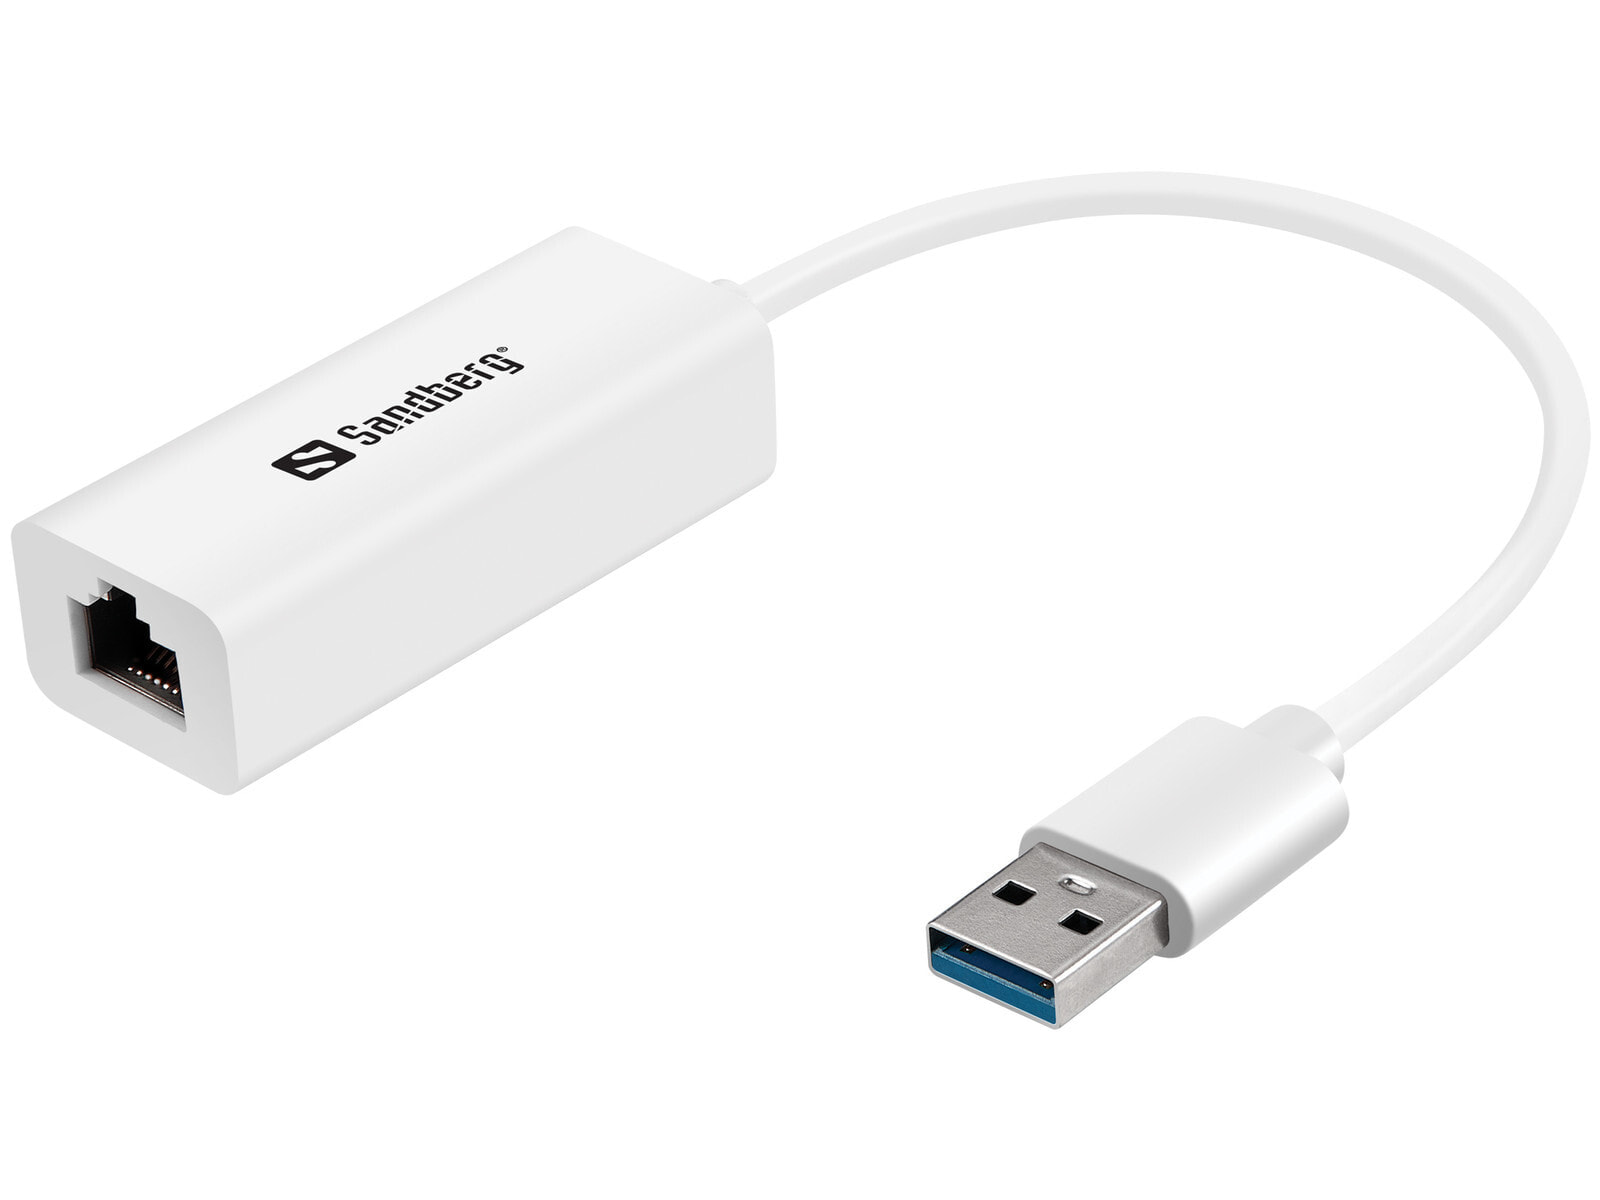 Sandberg USB3.0 Gigabit Network Adapter 133-90